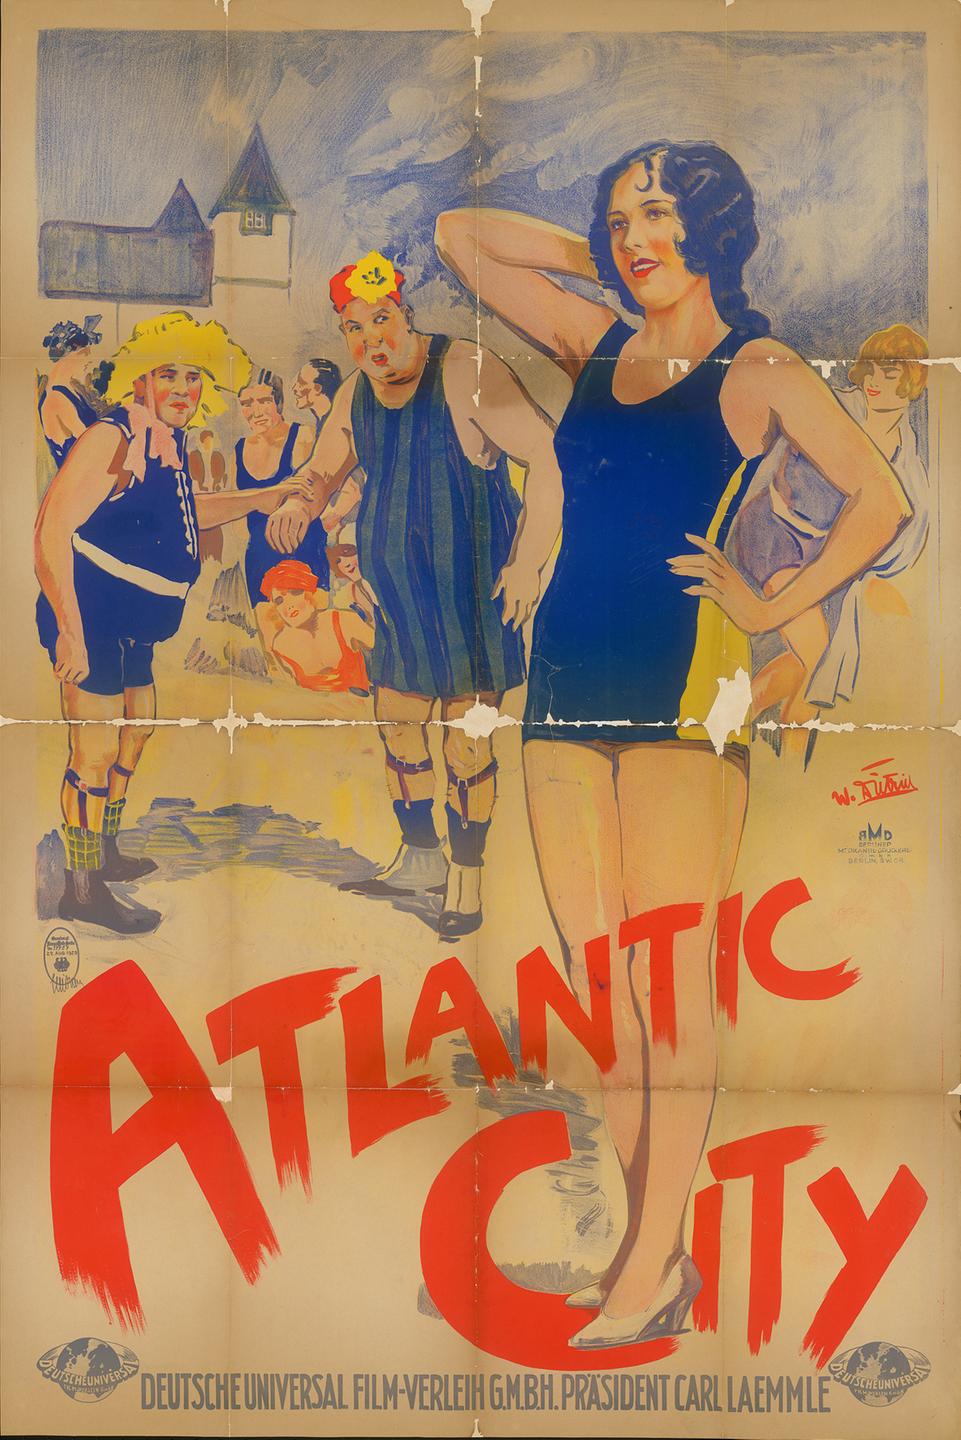 Ein altes Filmplakat mit Gebrauchsspuren. Unten steht mit roter Schrift "Atlantic City", darüber mehrere Menschen.